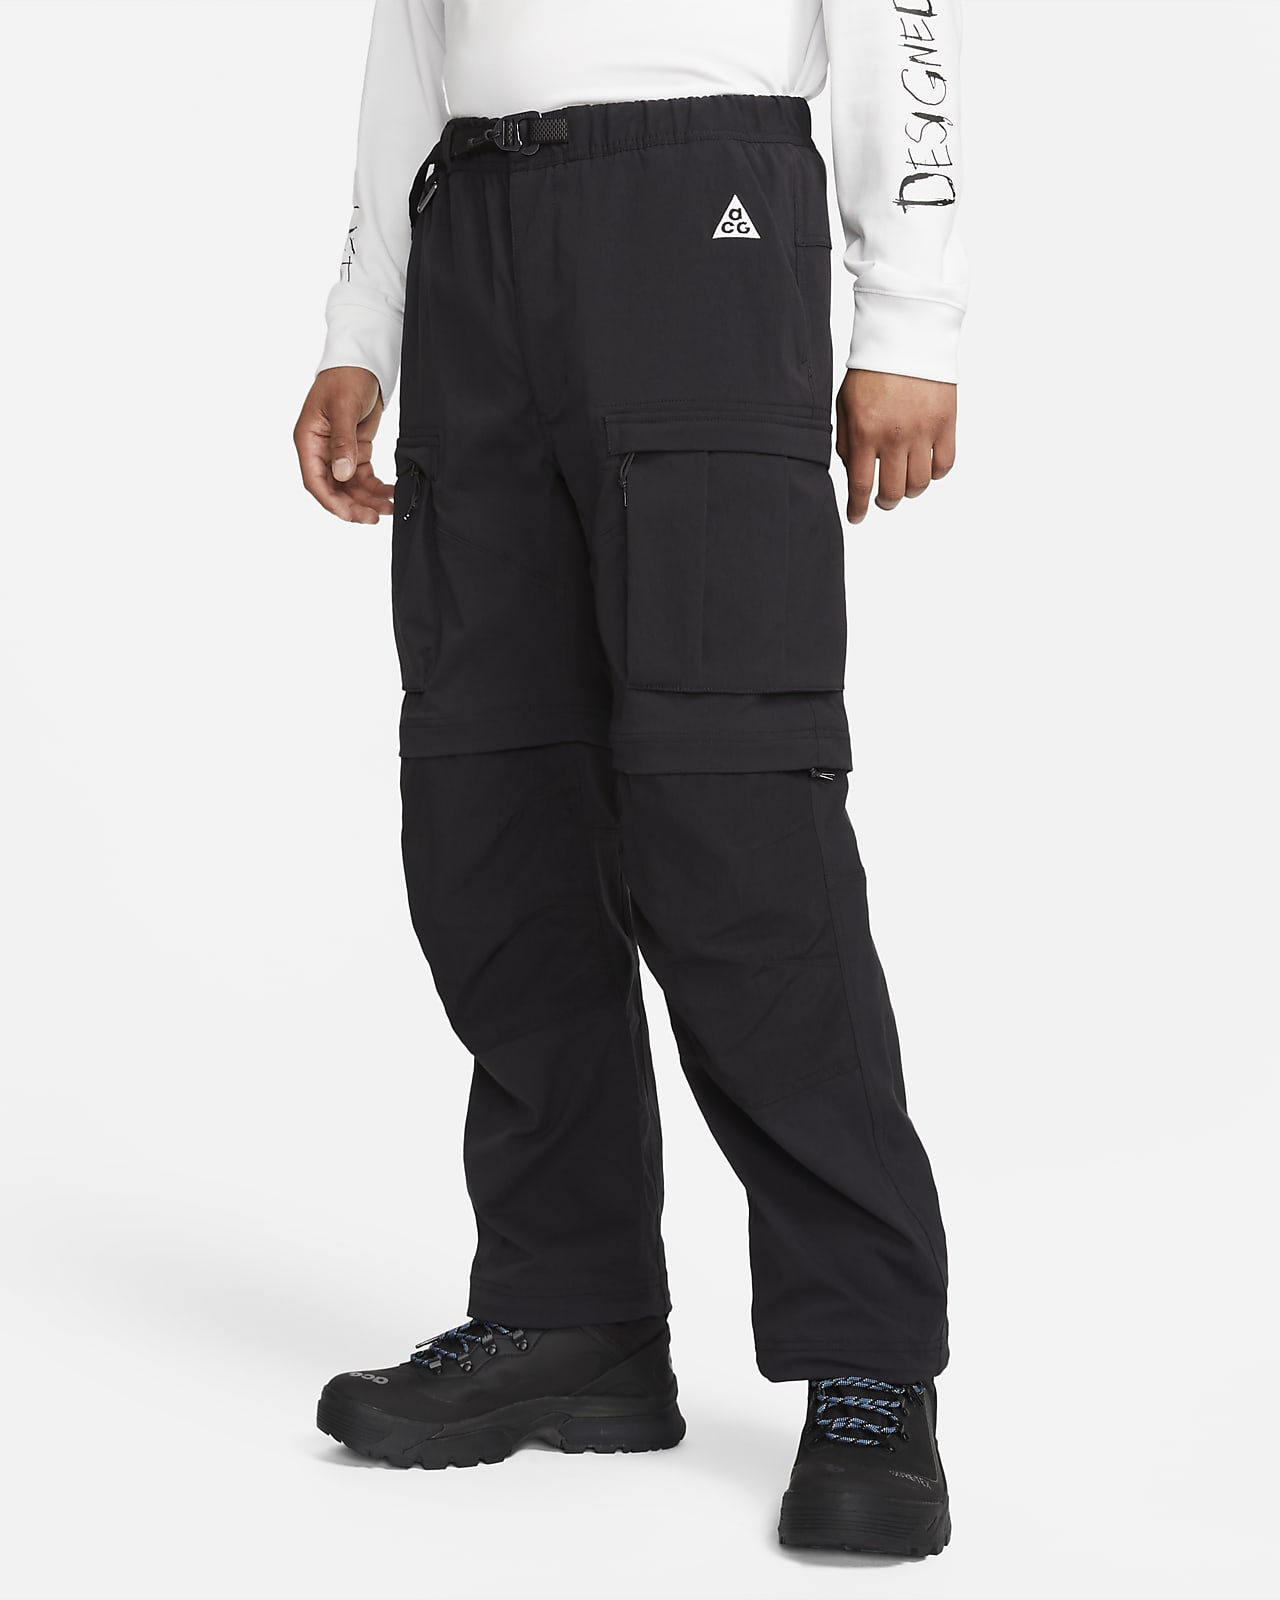 Nike ACG "Smith Summit" Pantalón cargo - Hombre